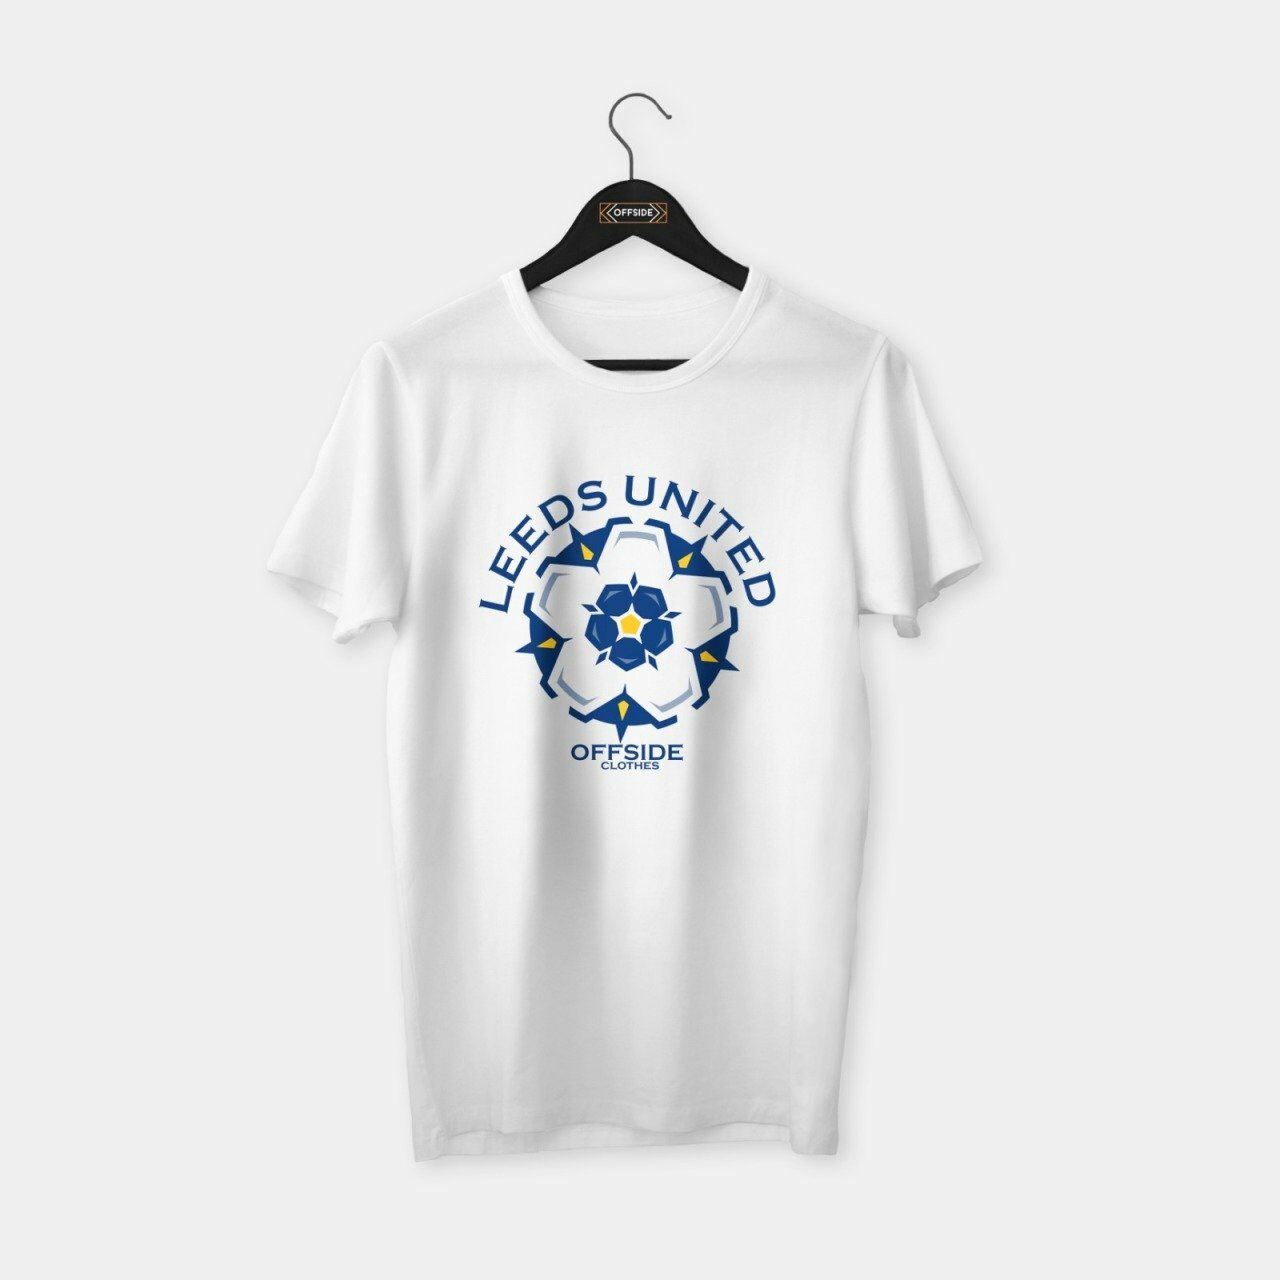 Leeds United T-shirt